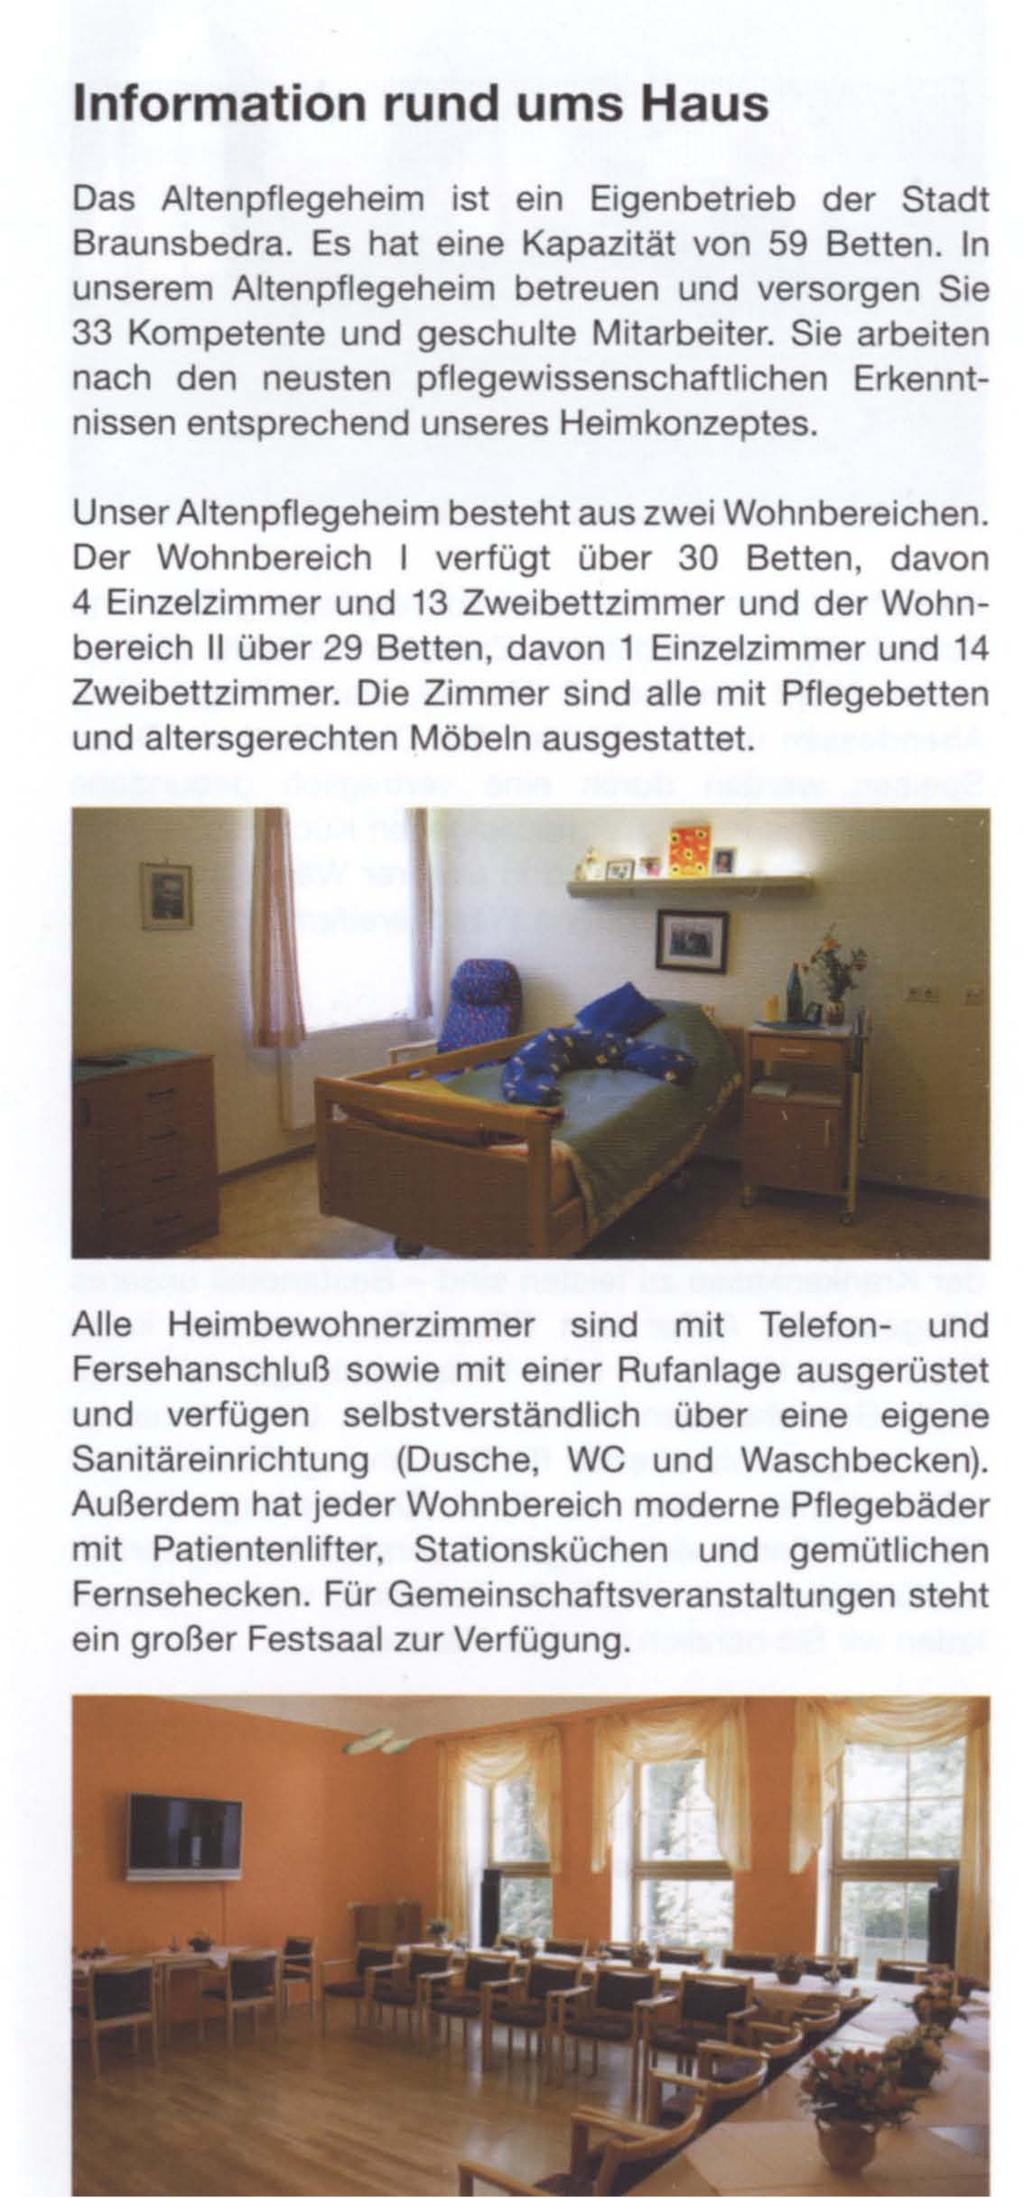 Information rund ums Haus Das Altenpflegeheim ist ein Eigenbetrieb der Stadt Braunsbedra. Es hat eine Kapazität von 59 Betten.